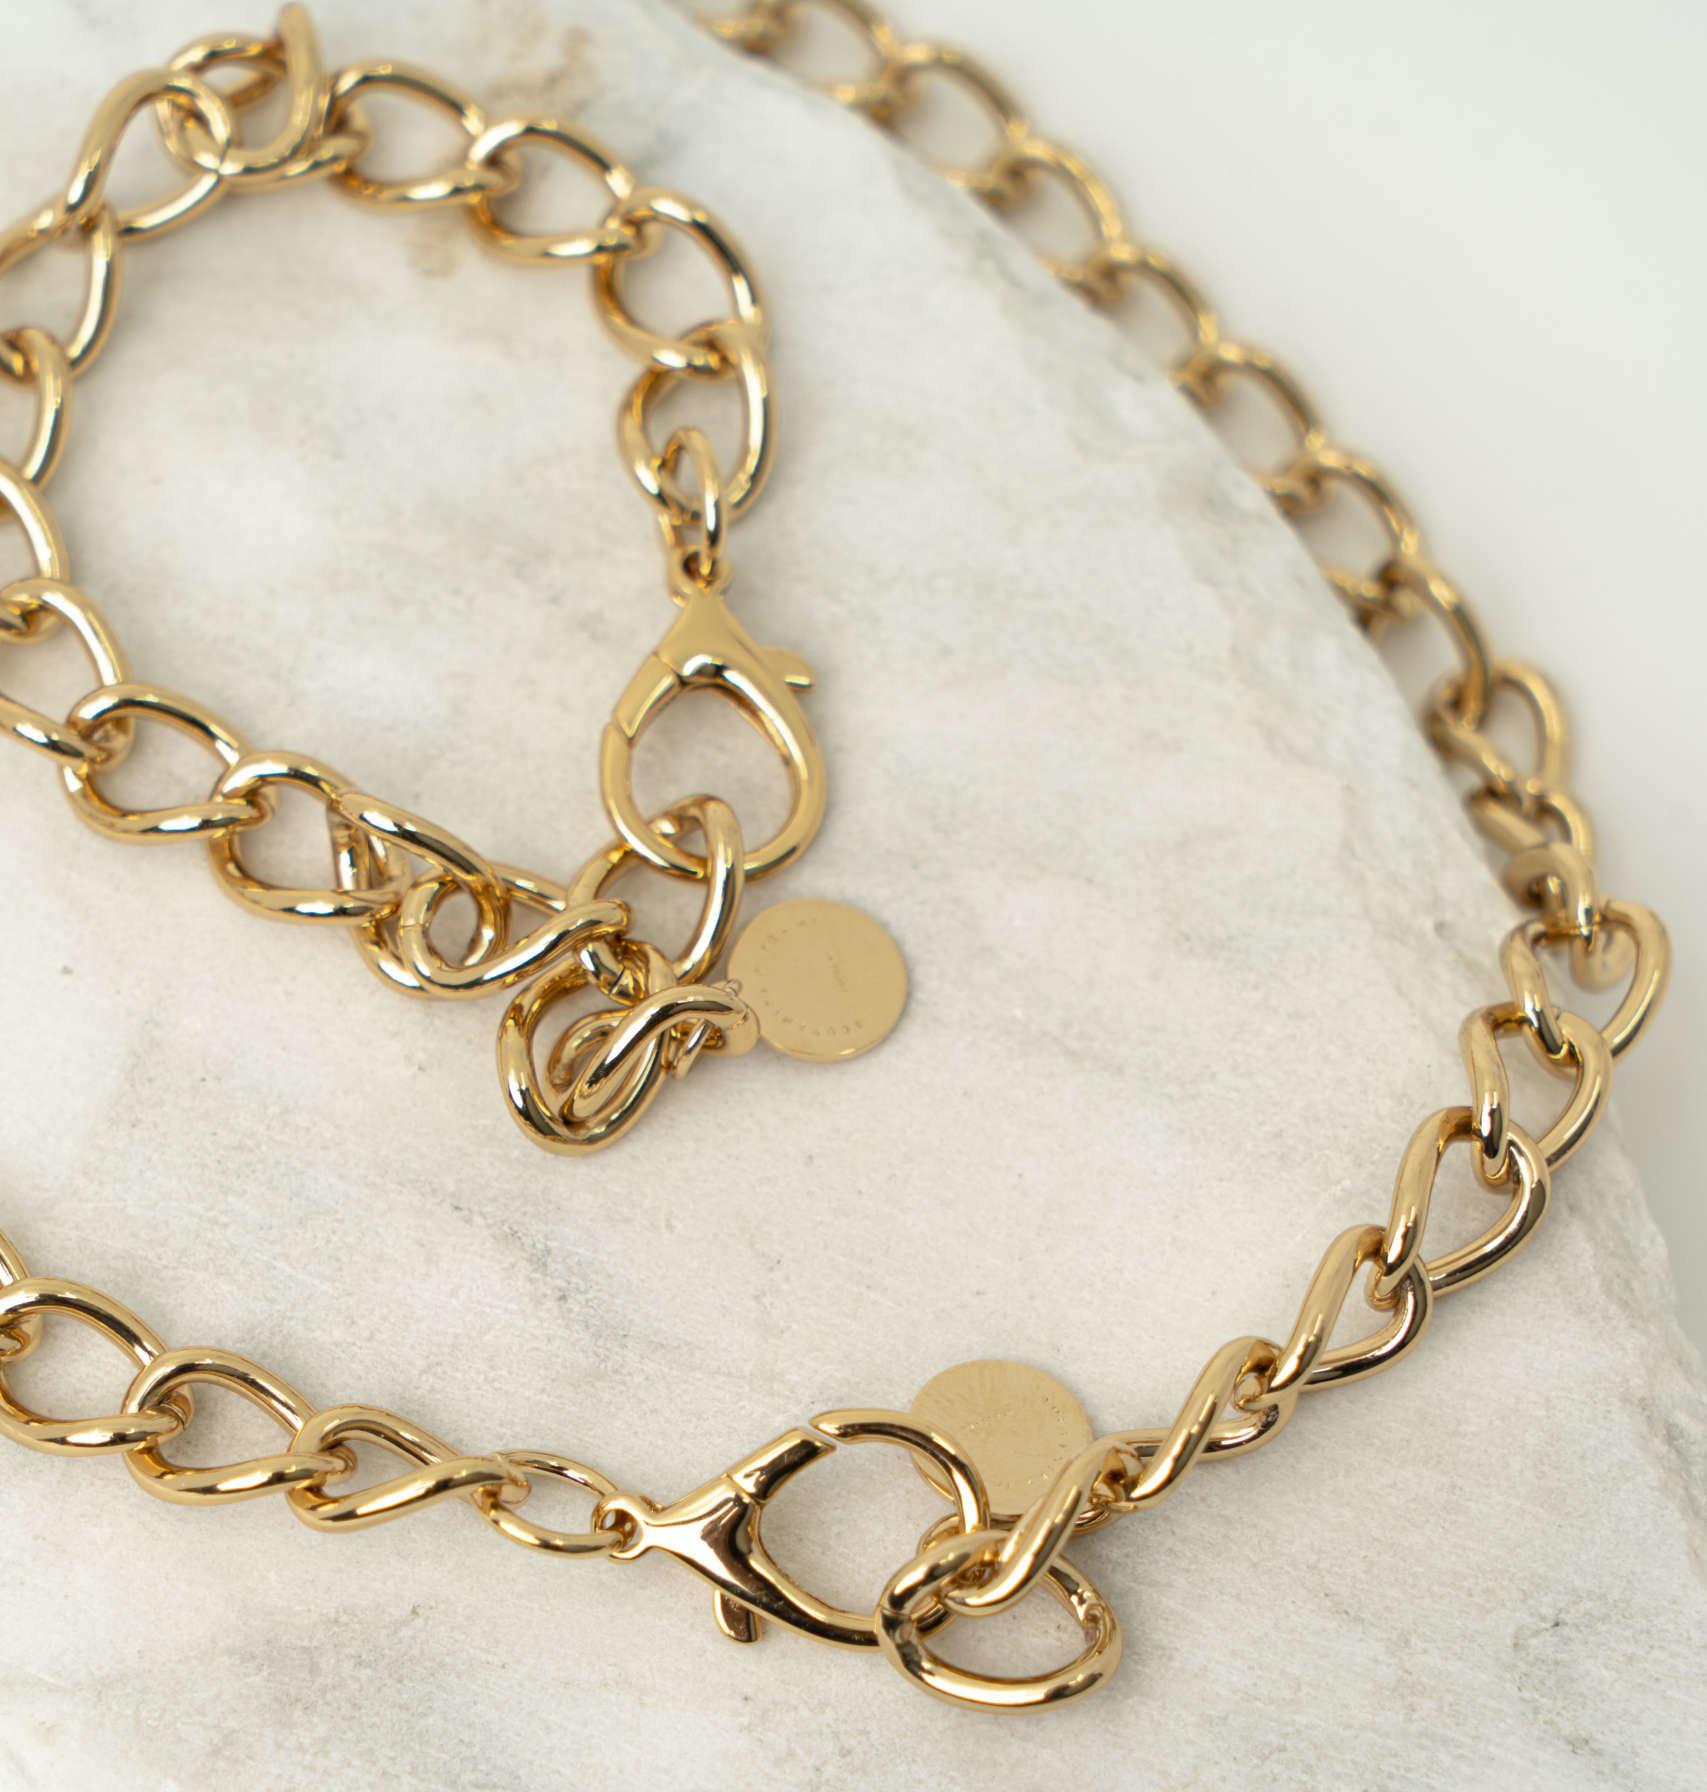 Alice chain gold bracelet